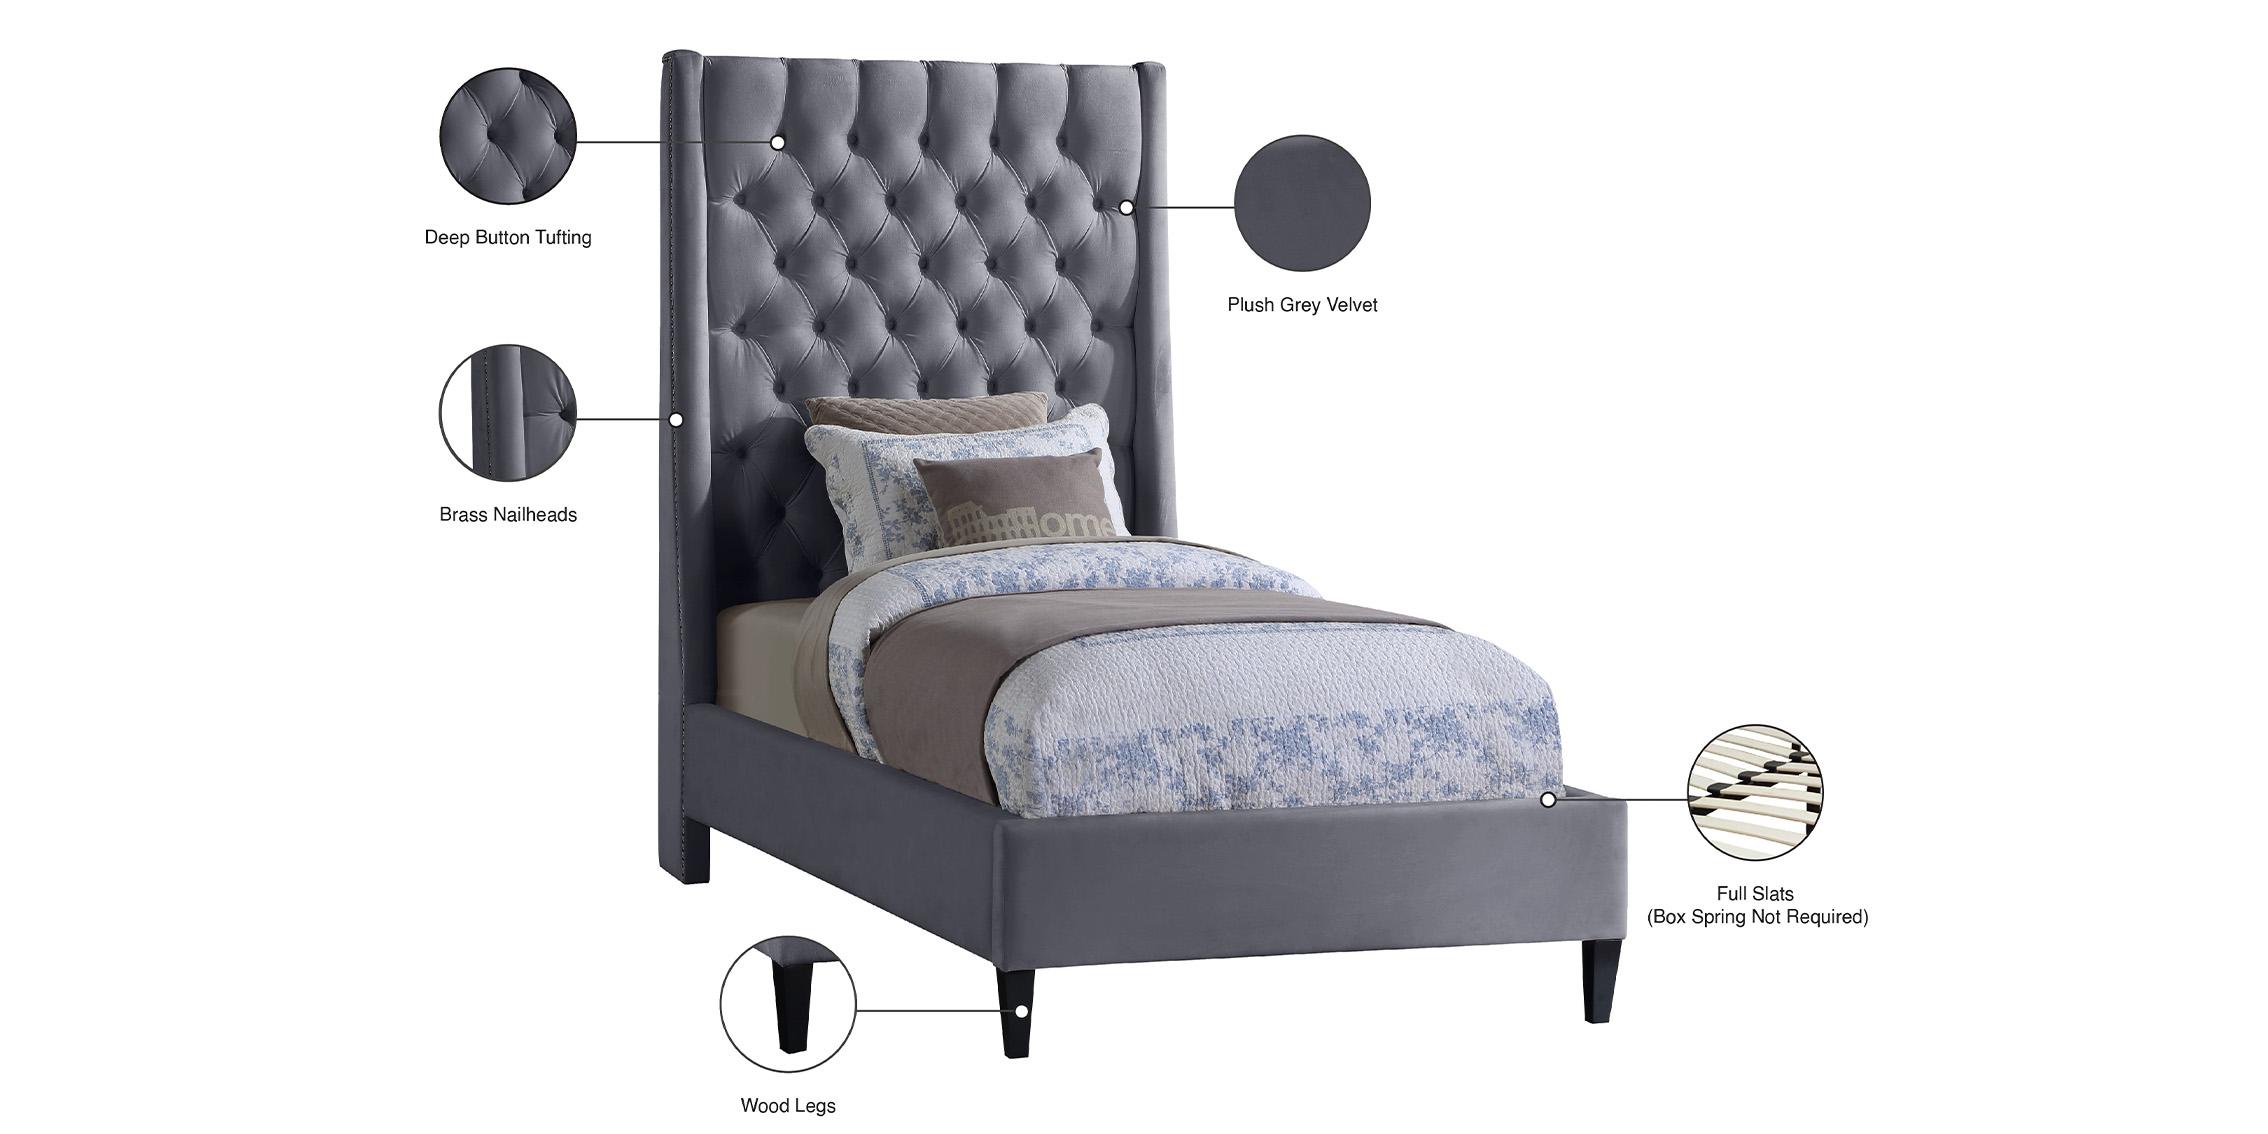 

    
FritzGrey-T Meridian Furniture Platform Bed
